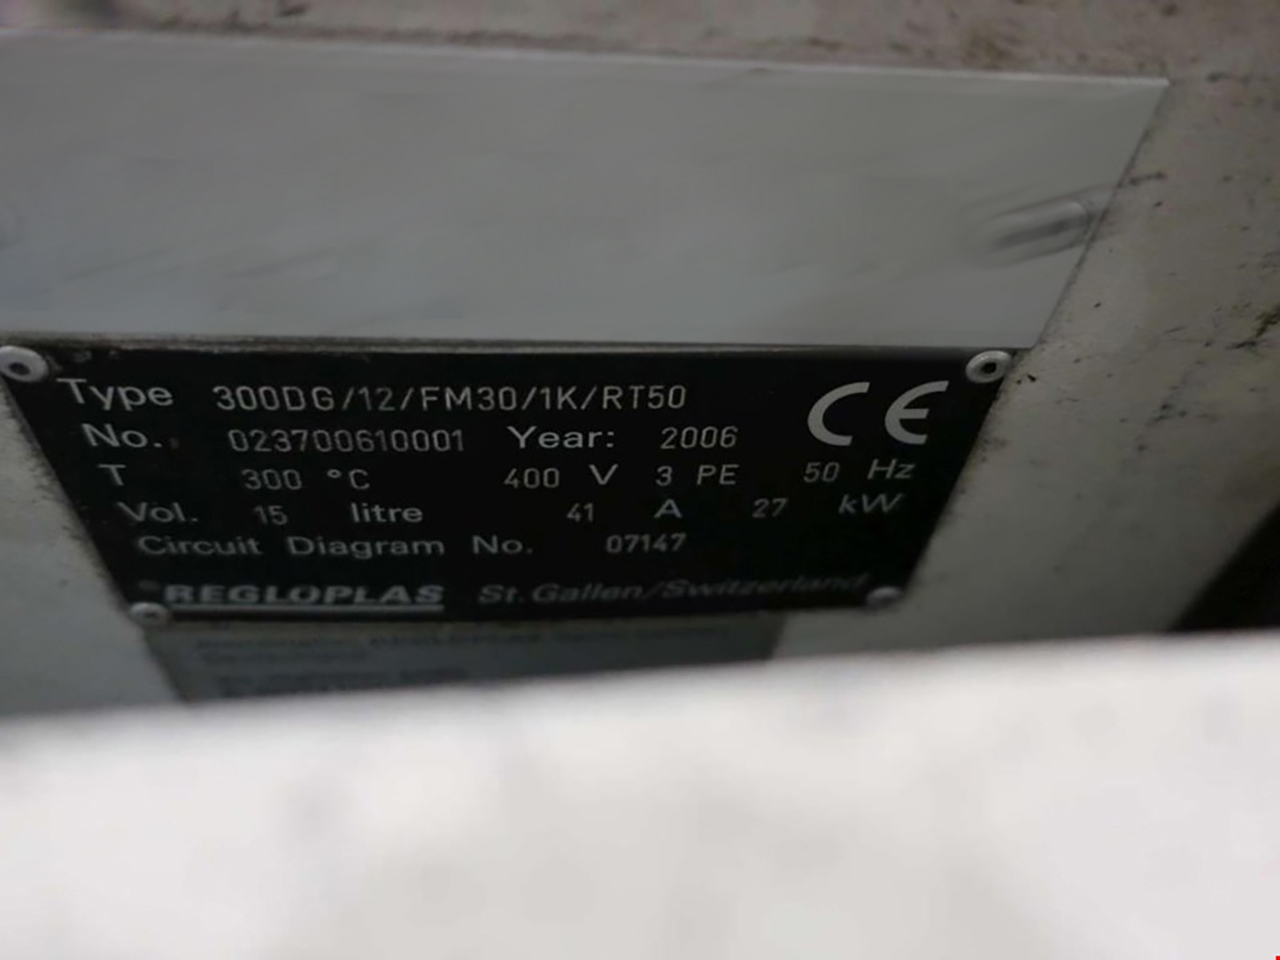 Regloplas 300DG/12/FM30/1K/RT50 temperature control unit ZU2139, used